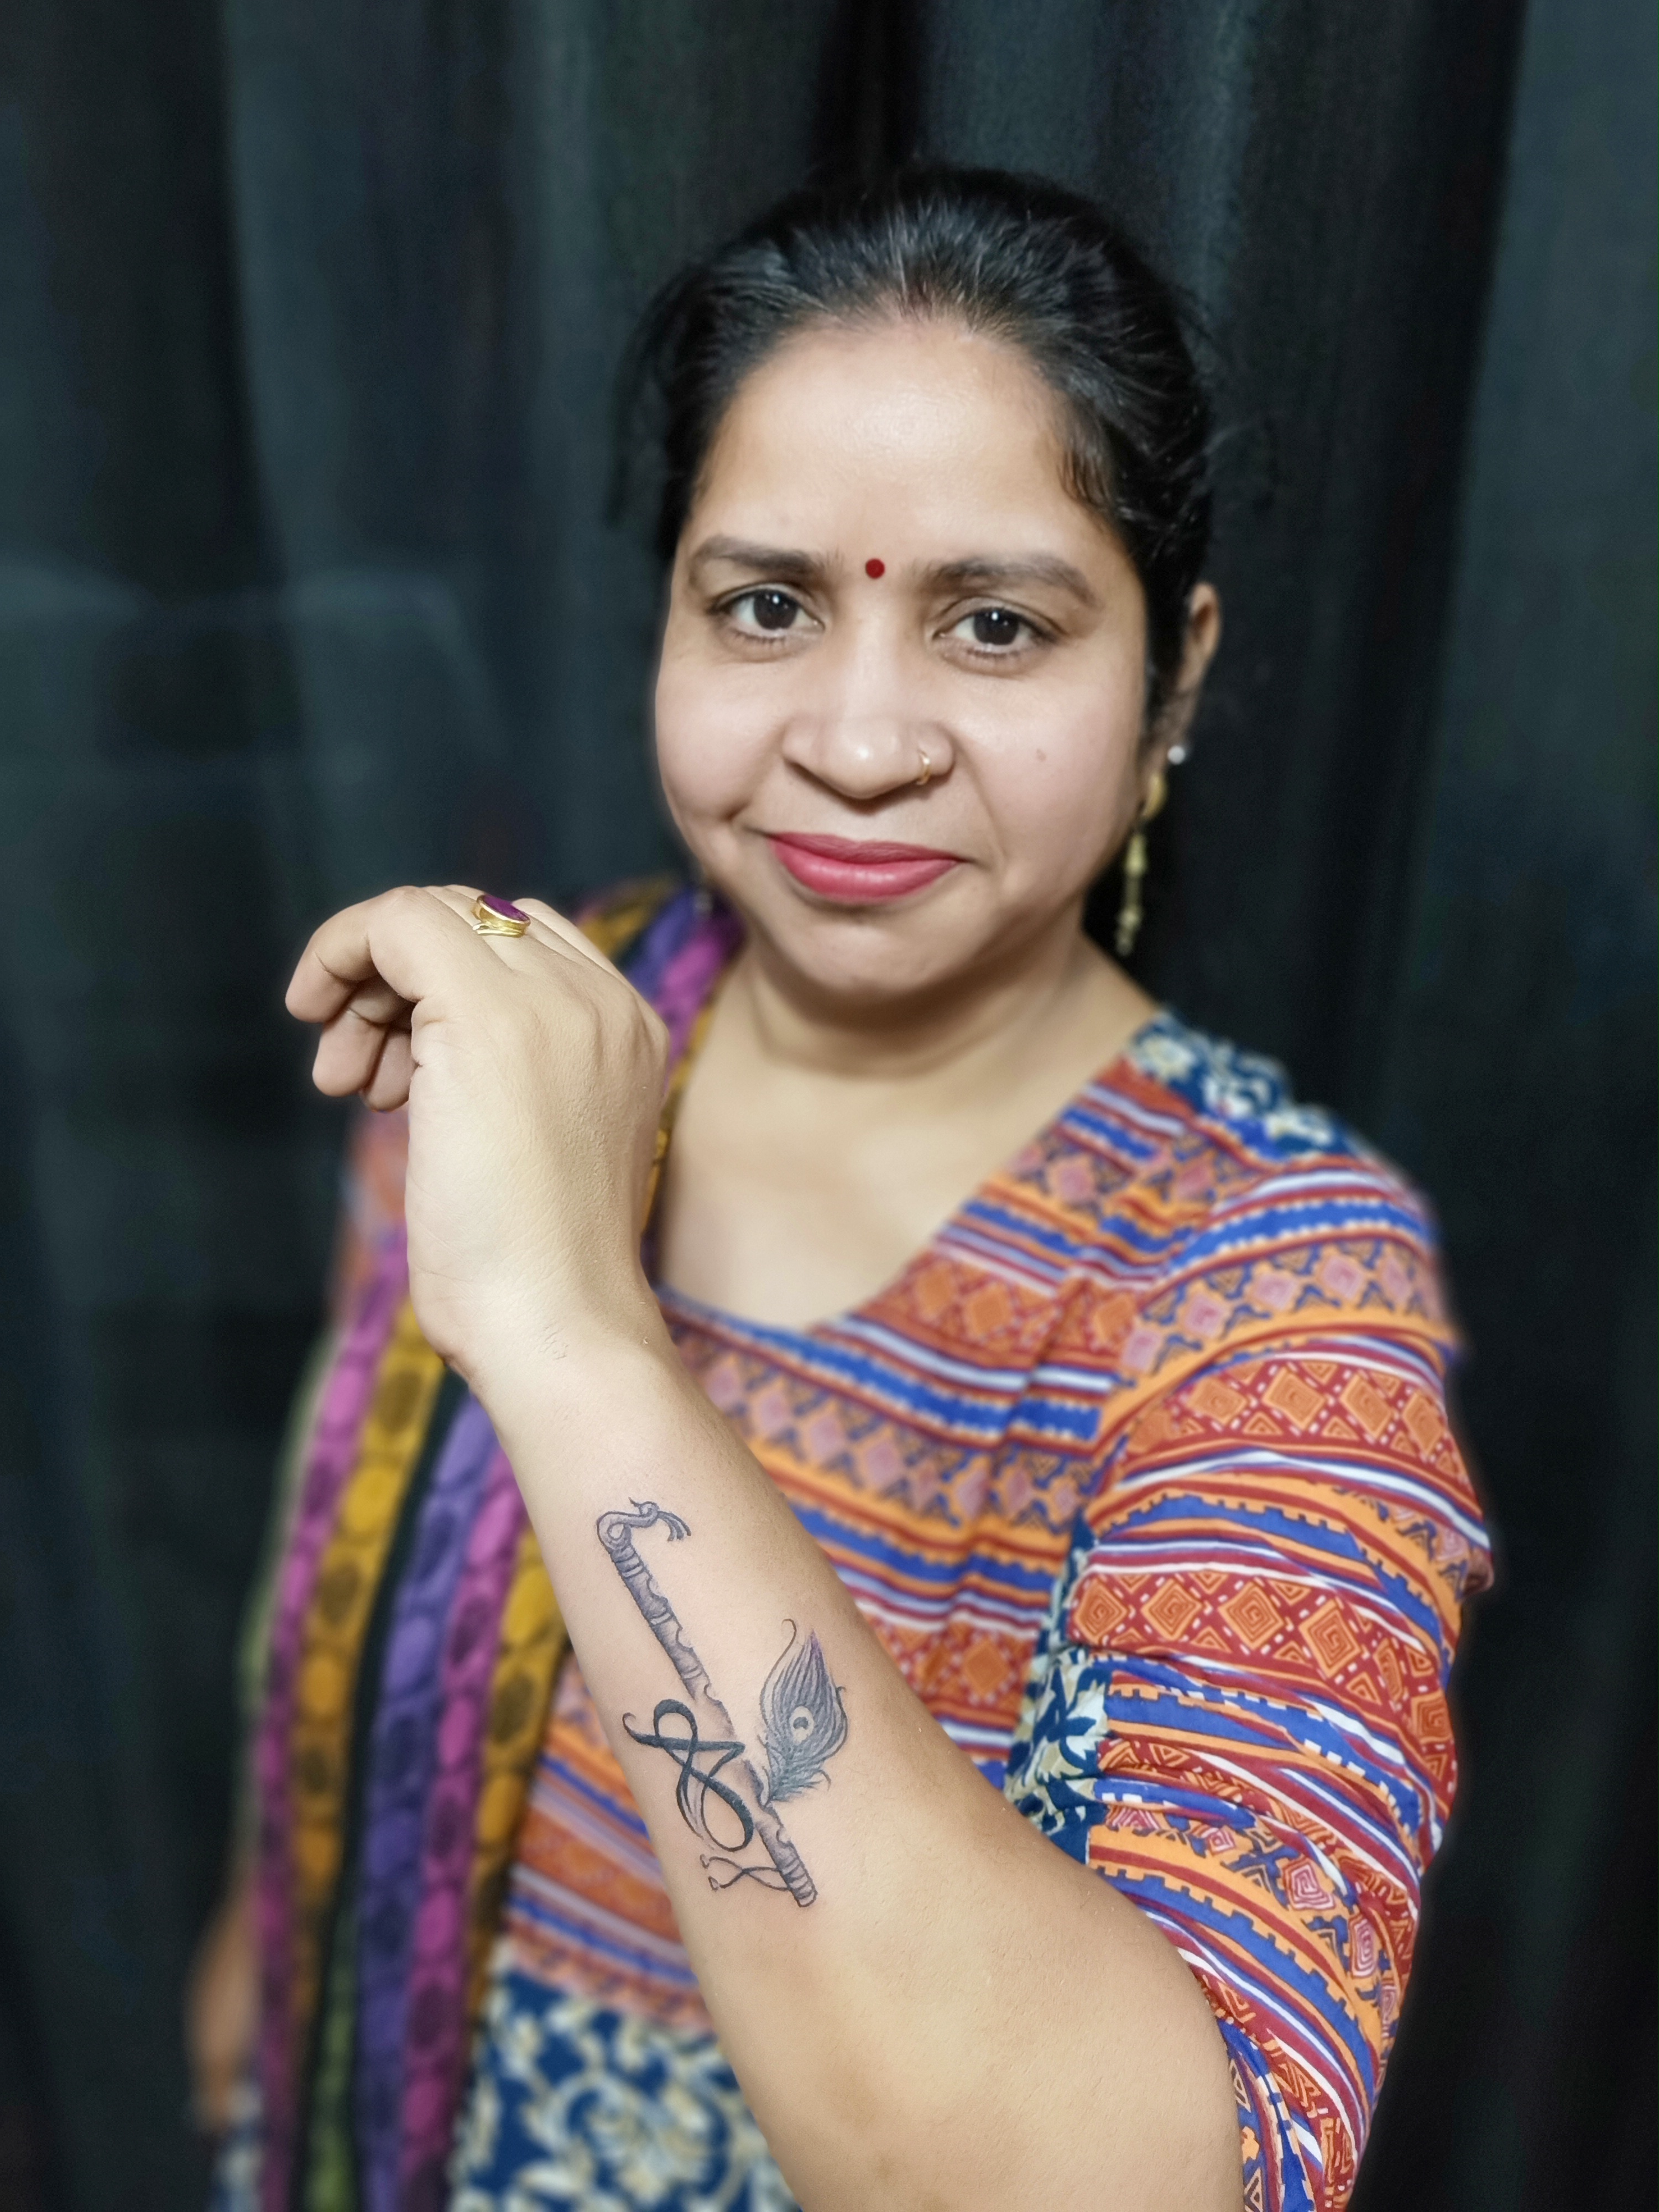 Devang Tattoos in Laxmi NagarDelhi  Best Tattoo Artists in Delhi   Justdial